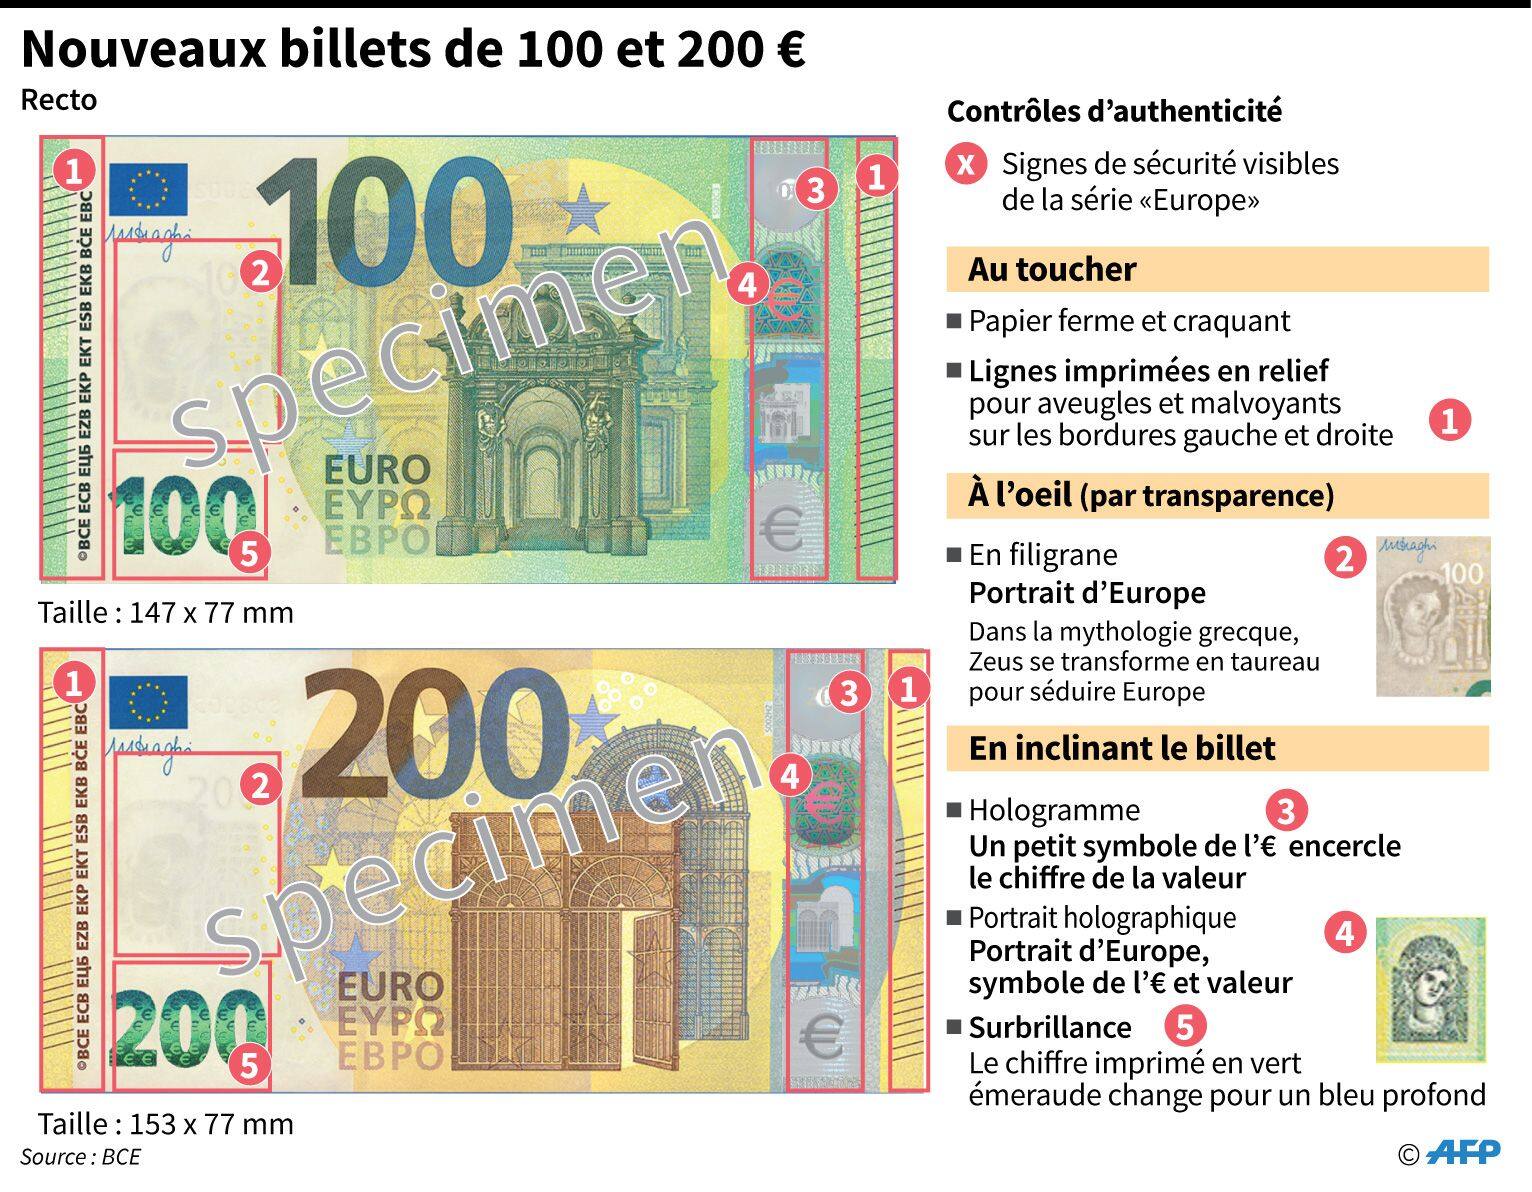 Voici les nouveaux billets de 100 et 200 euros - Le Parisien